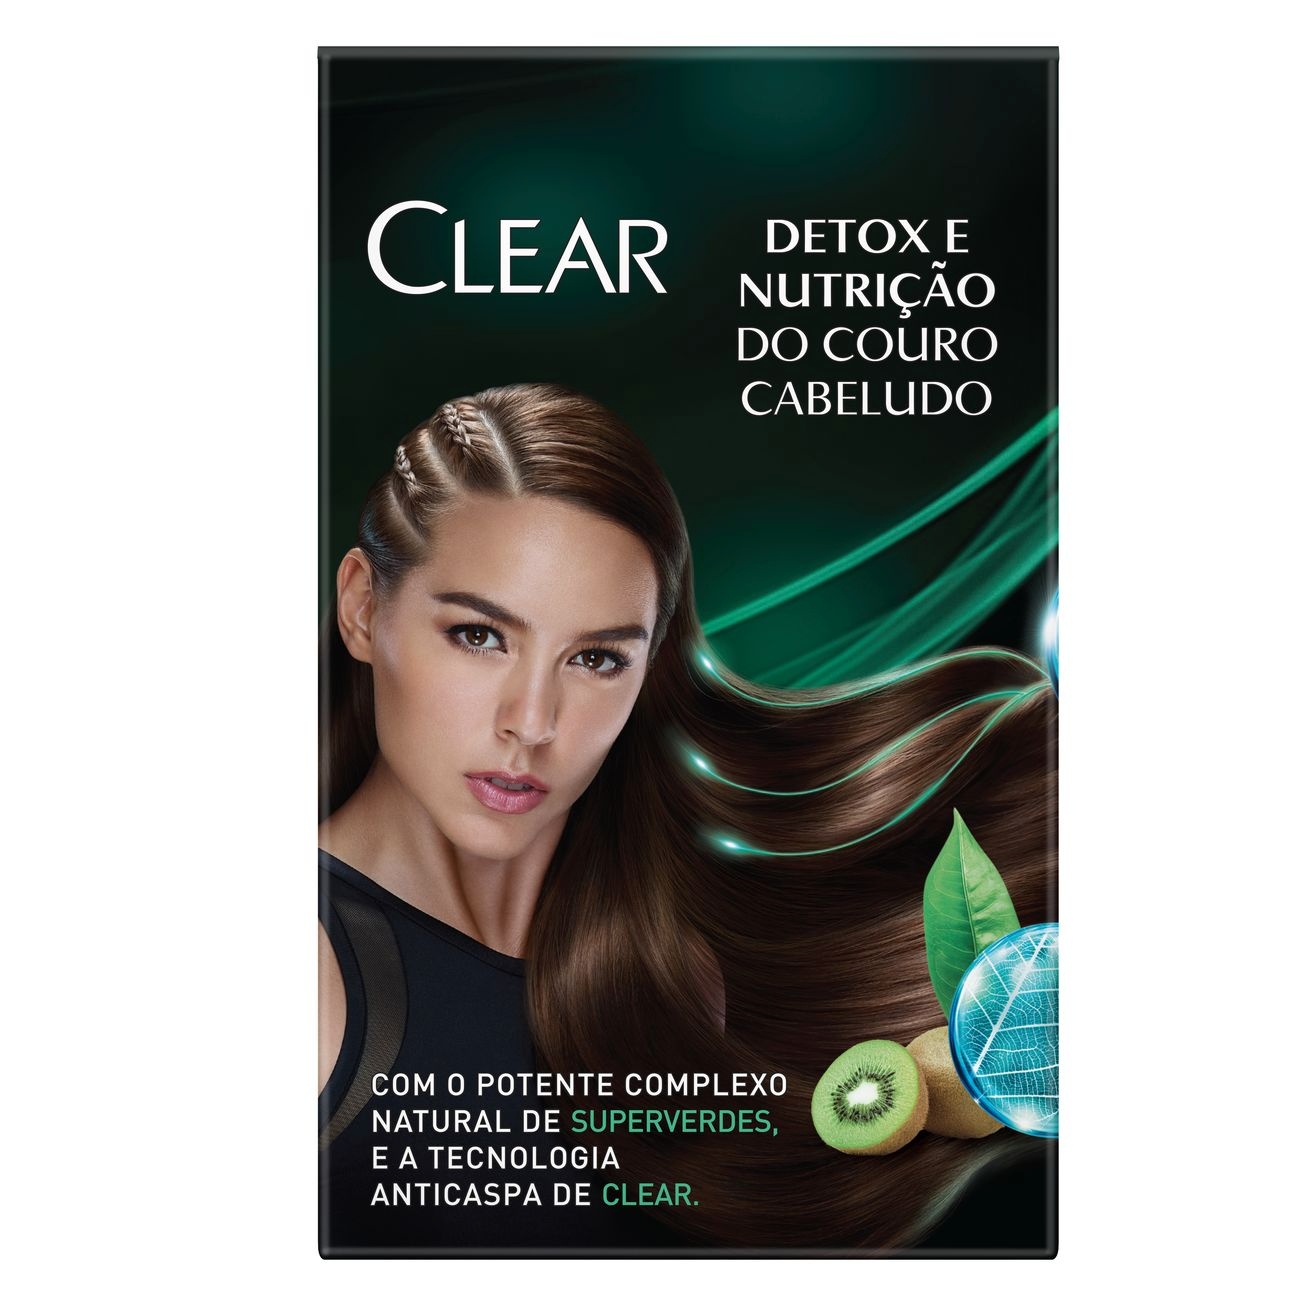 Oferta Clear Detox Shampoo 200ml + Condicionador 200ml